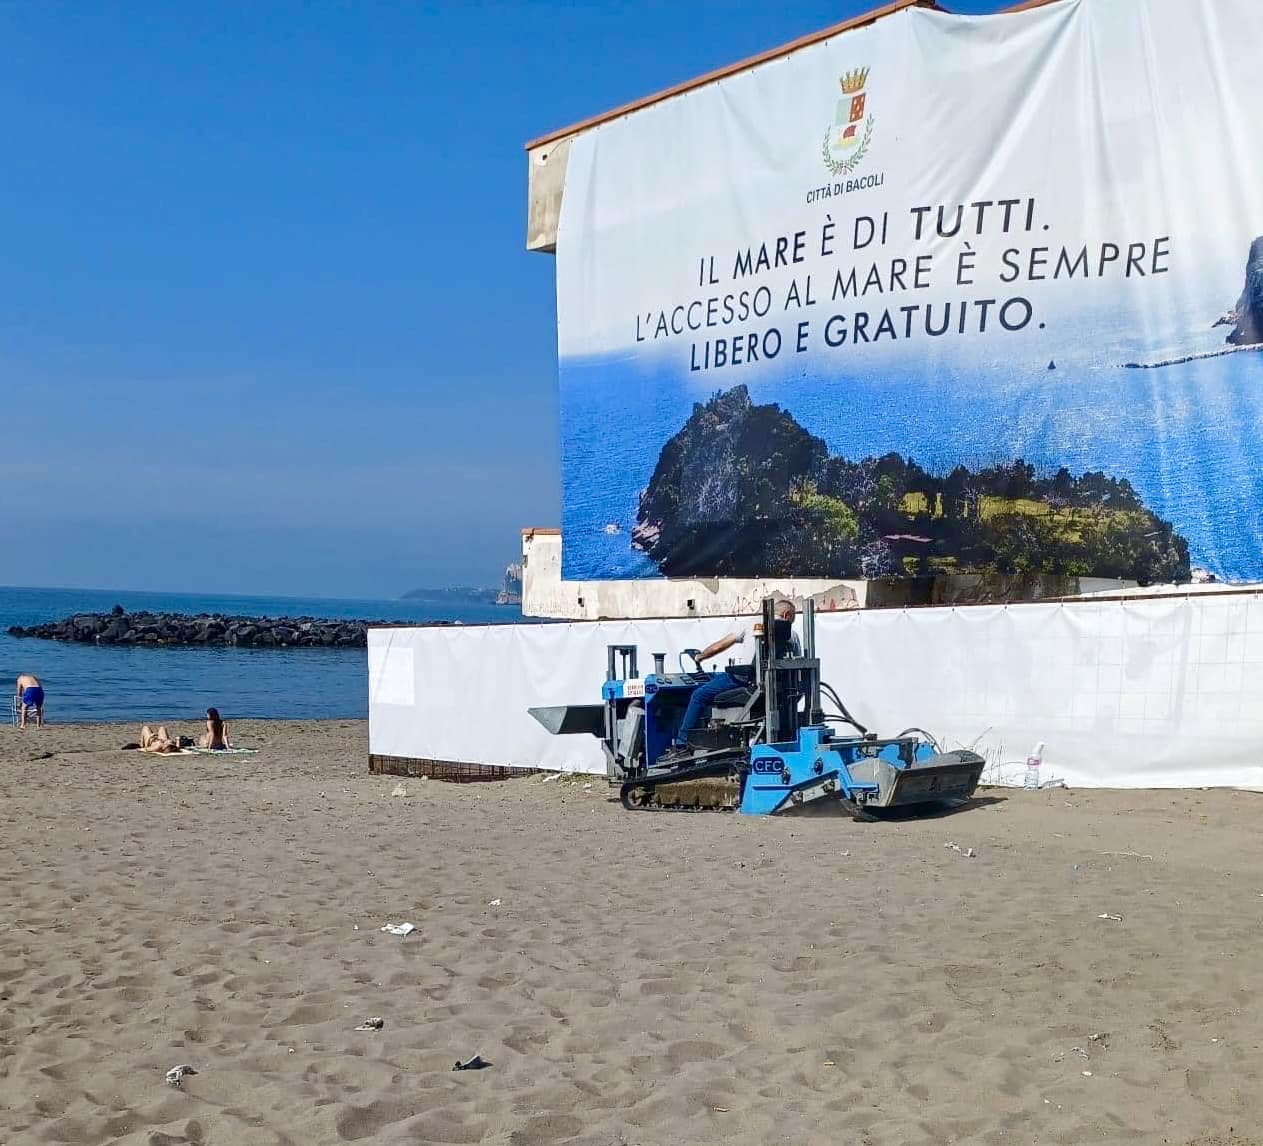 Via i cancelli dalle spiagge di Bacoli: l’accesso al mare è libero e gratuito